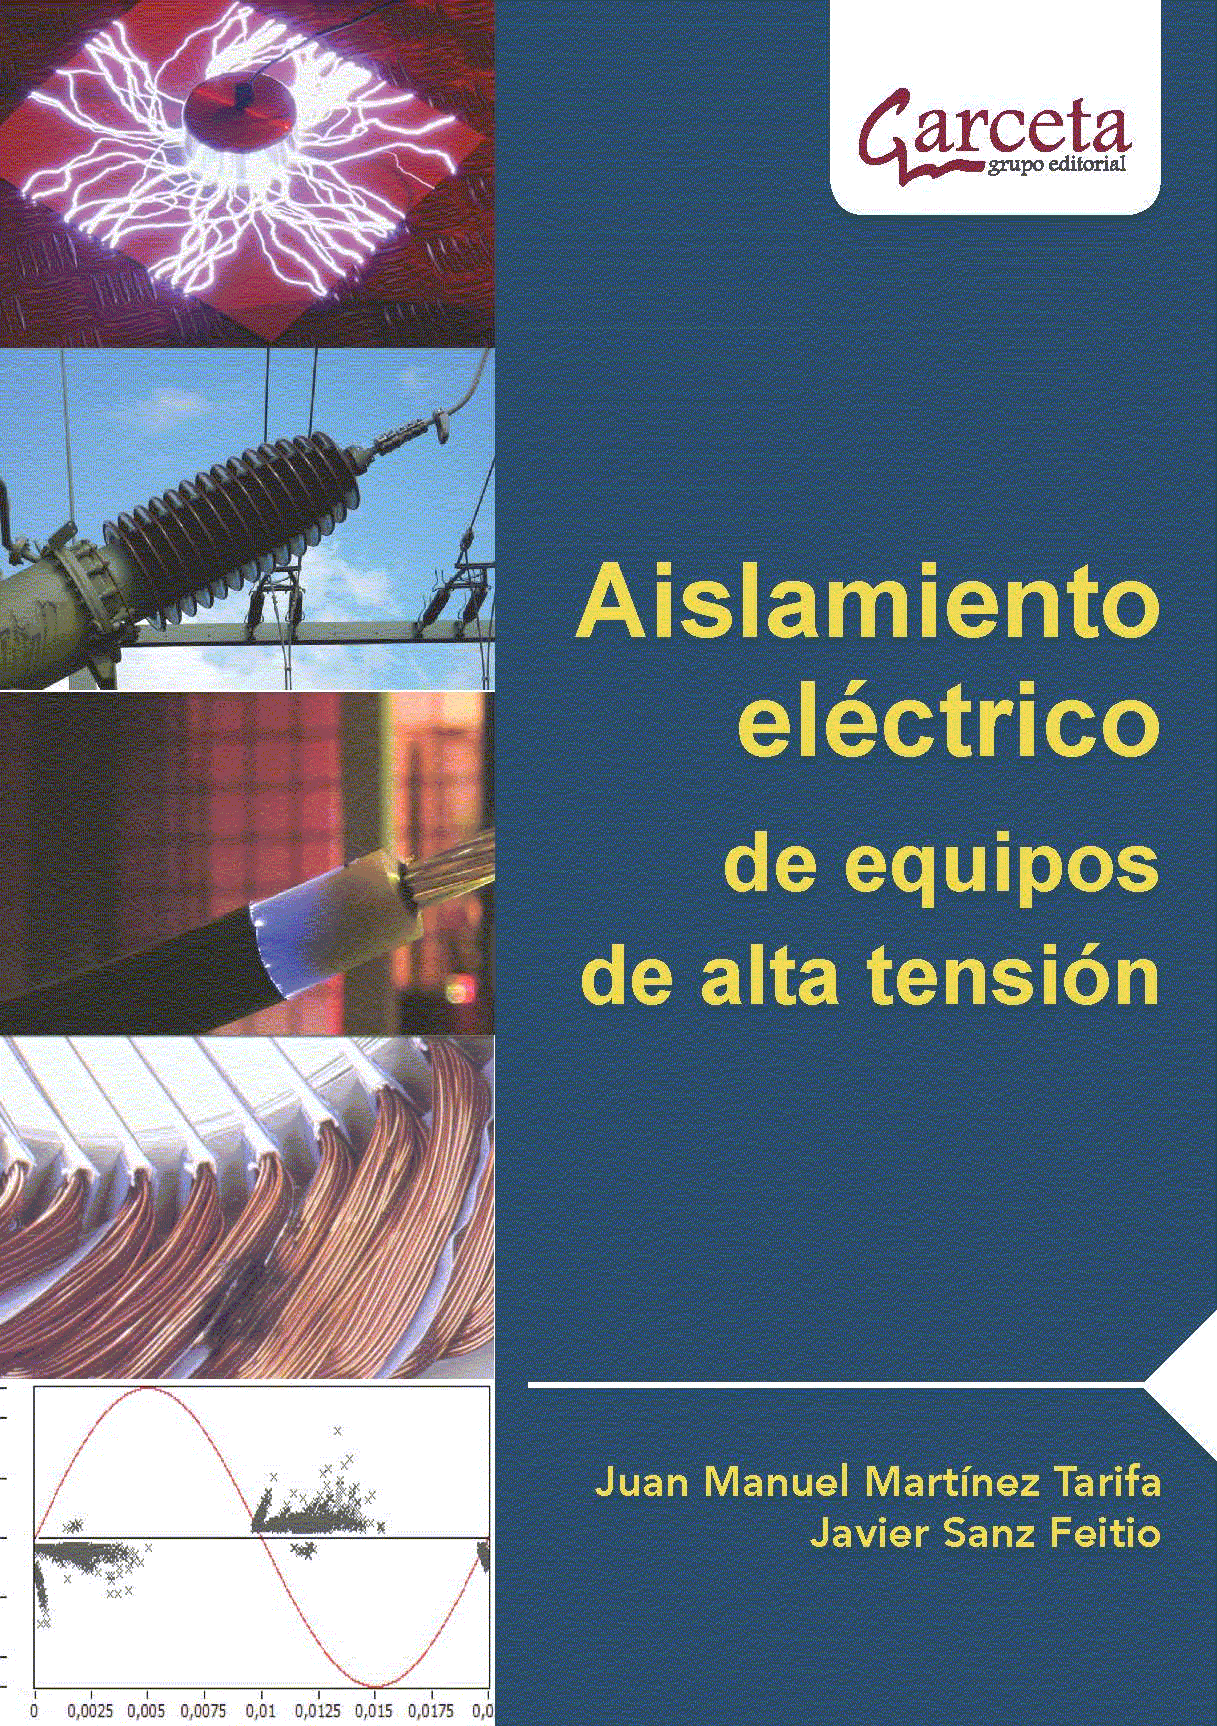 Aislamiento eléctrico de equipos de alta tensión